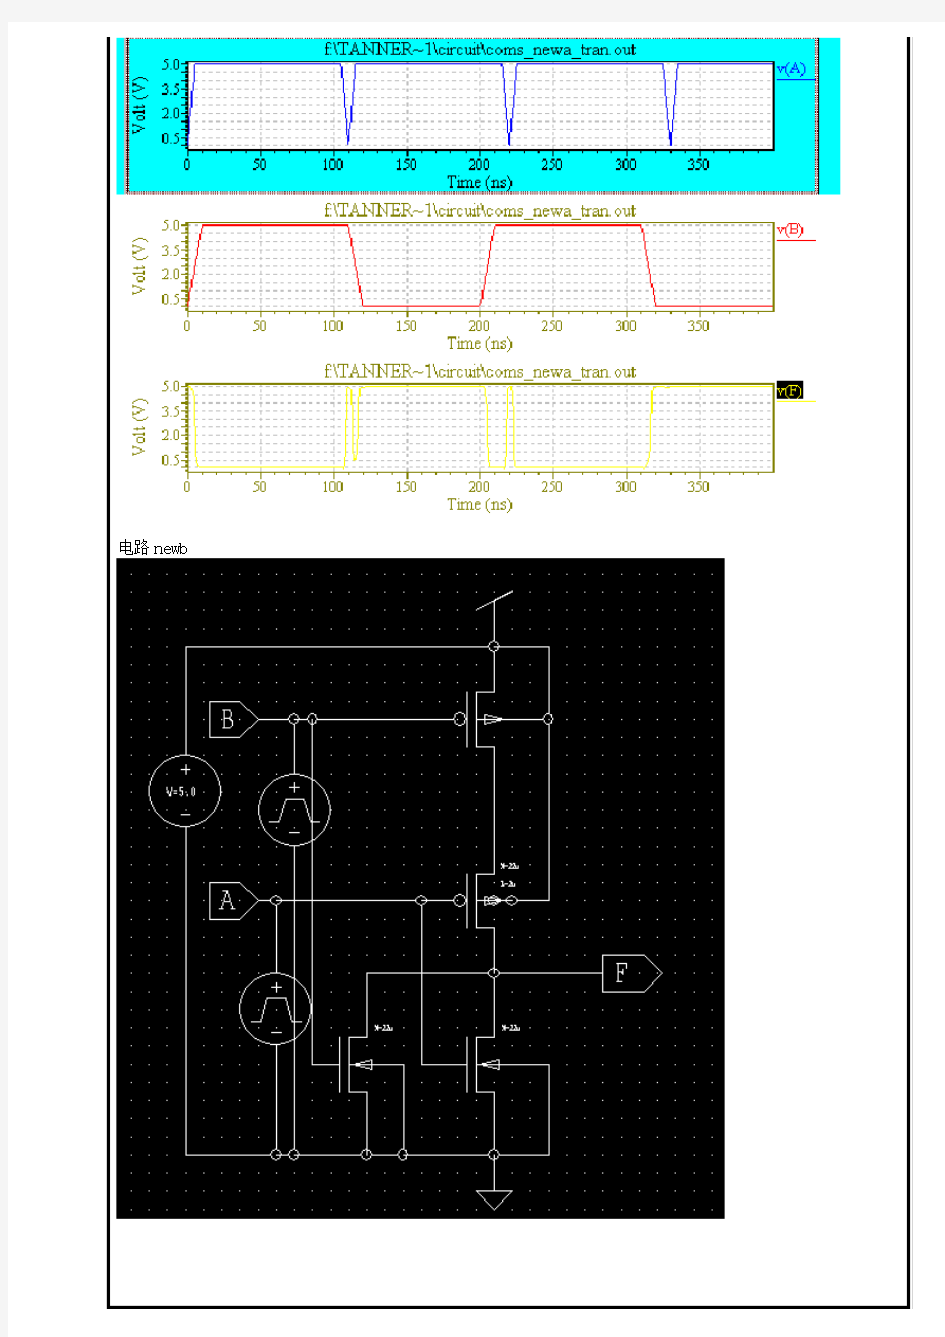 CMOS门电路的线路图设计与仿真